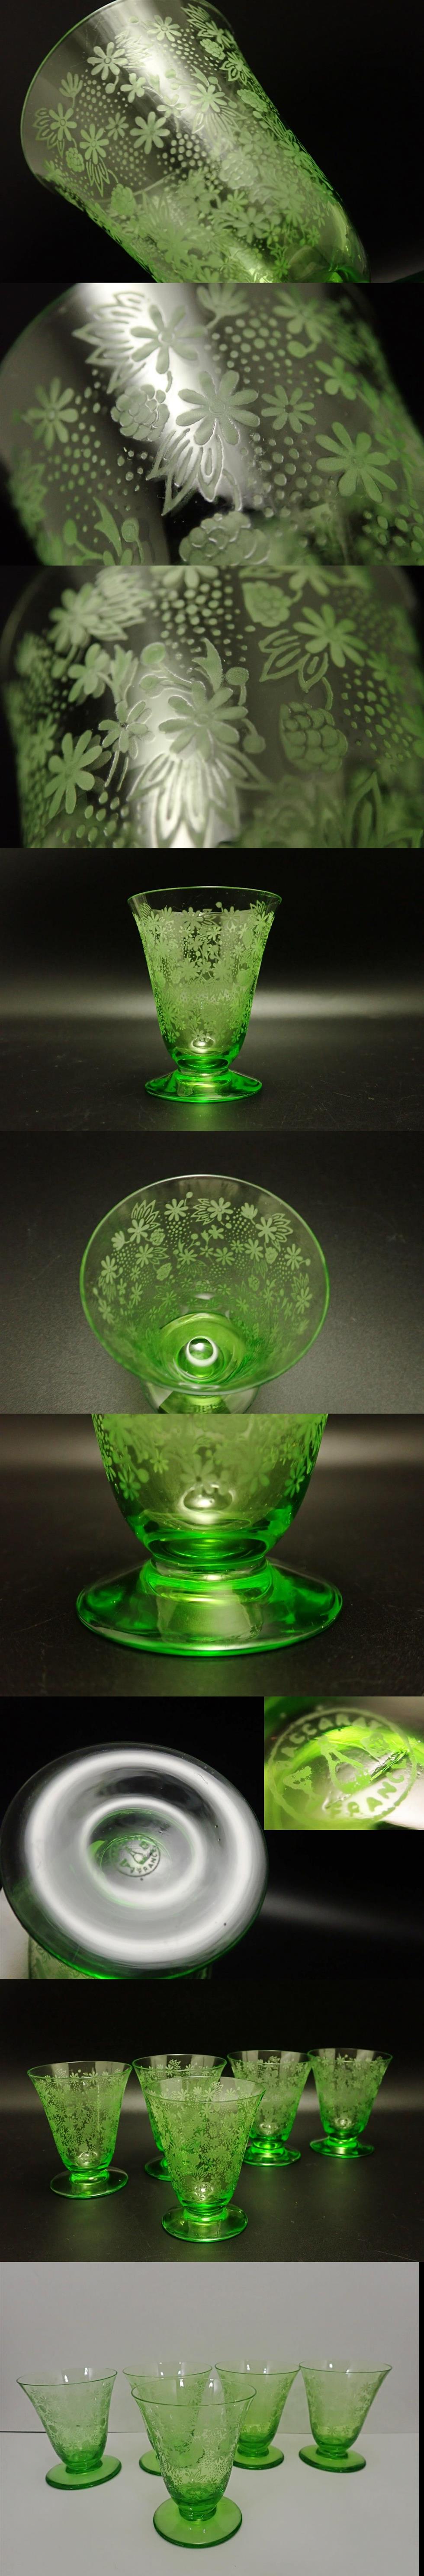 大人気特価H8cm オールド バカラ 緑 エリザベート ワイン 冷酒 グラス 1個 グリーン クリスタル シャンパン ヴィンテージ アンティーク フランス クリスタルガラス